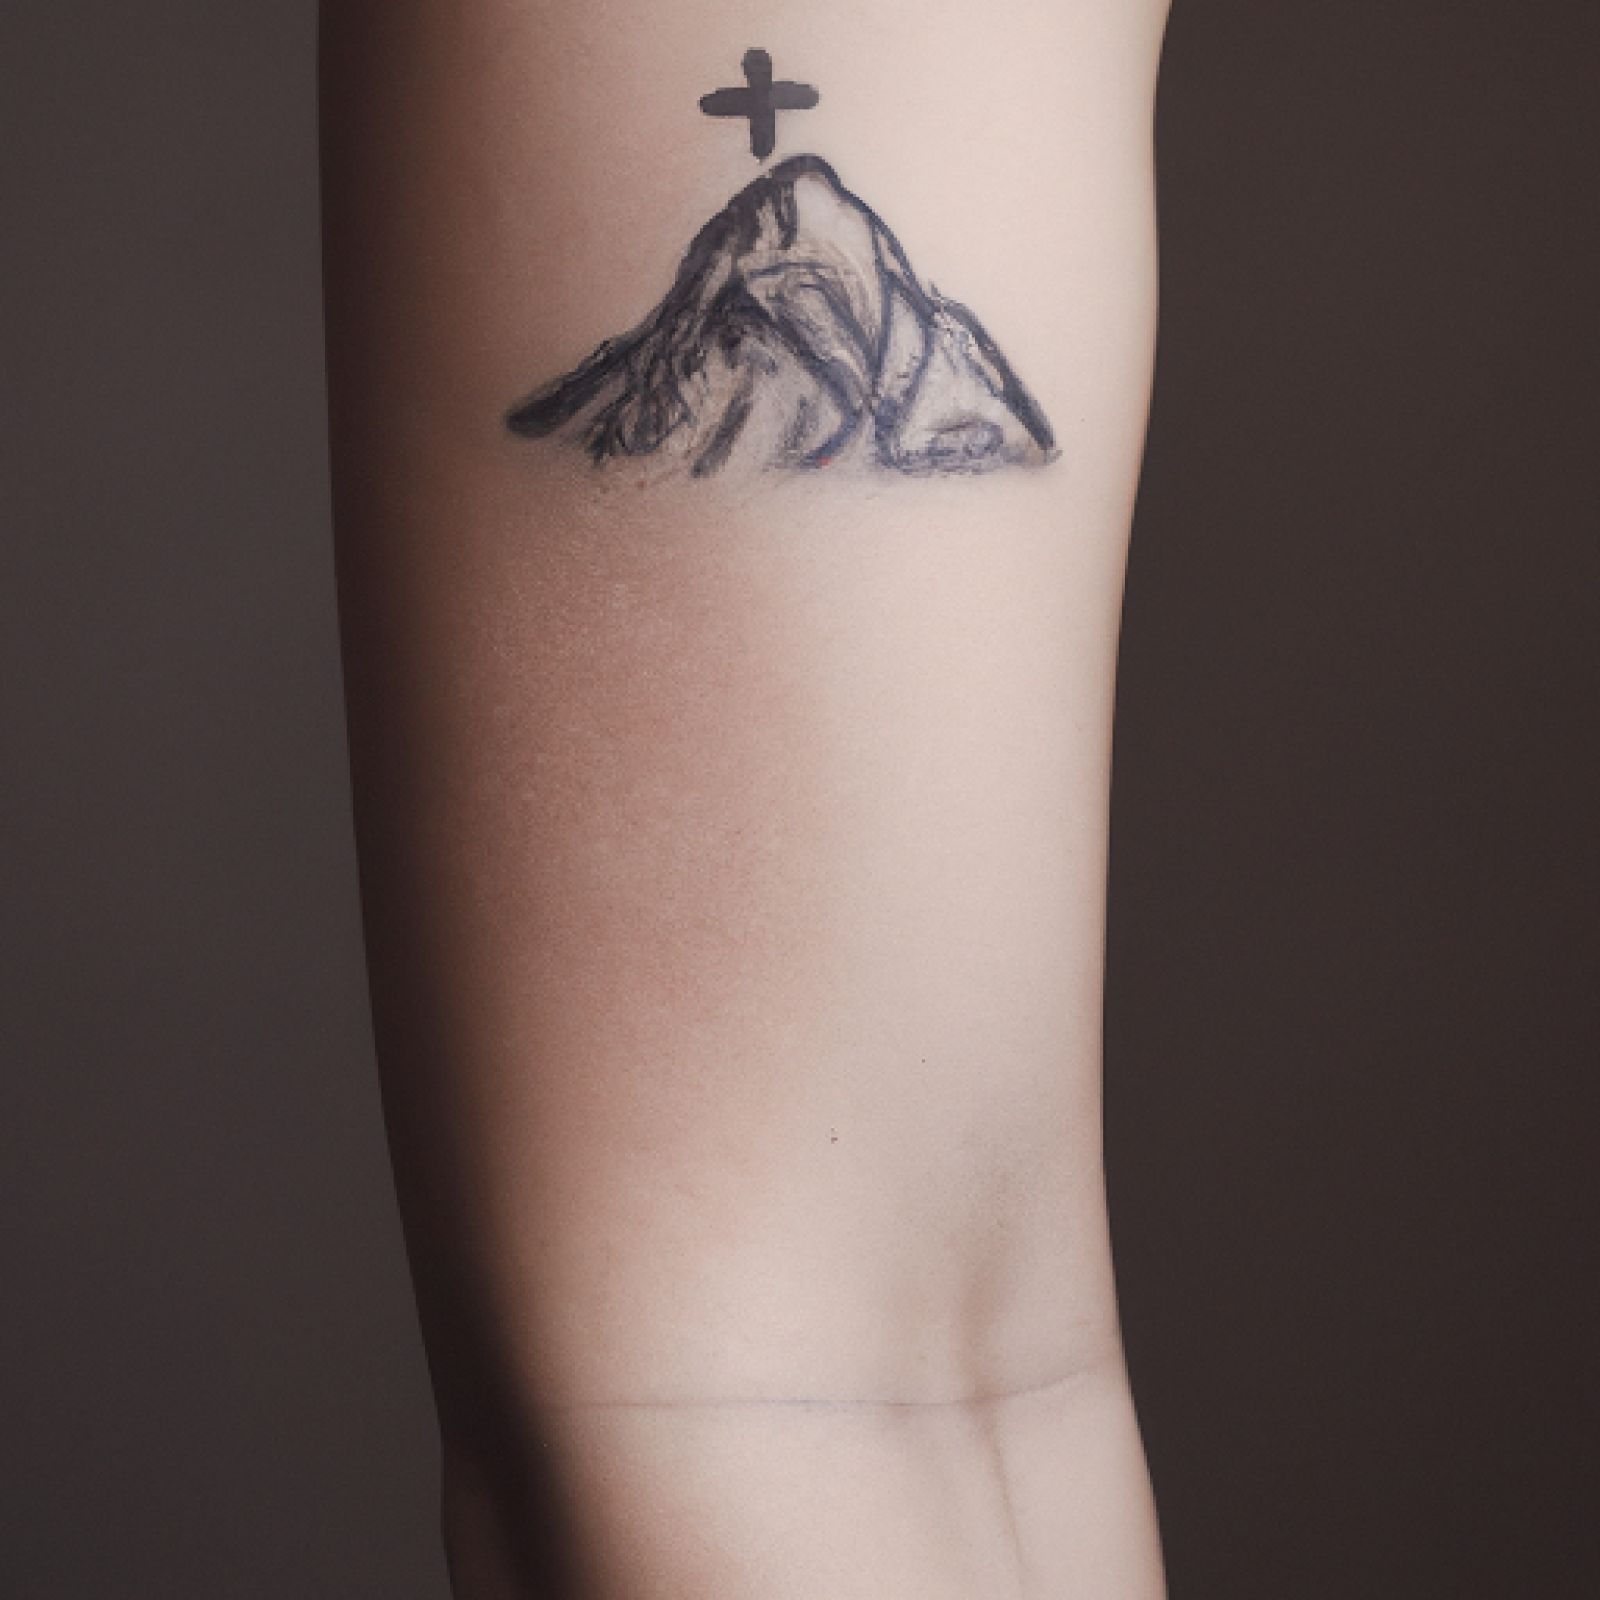 Mountain tattoo on forearm for women